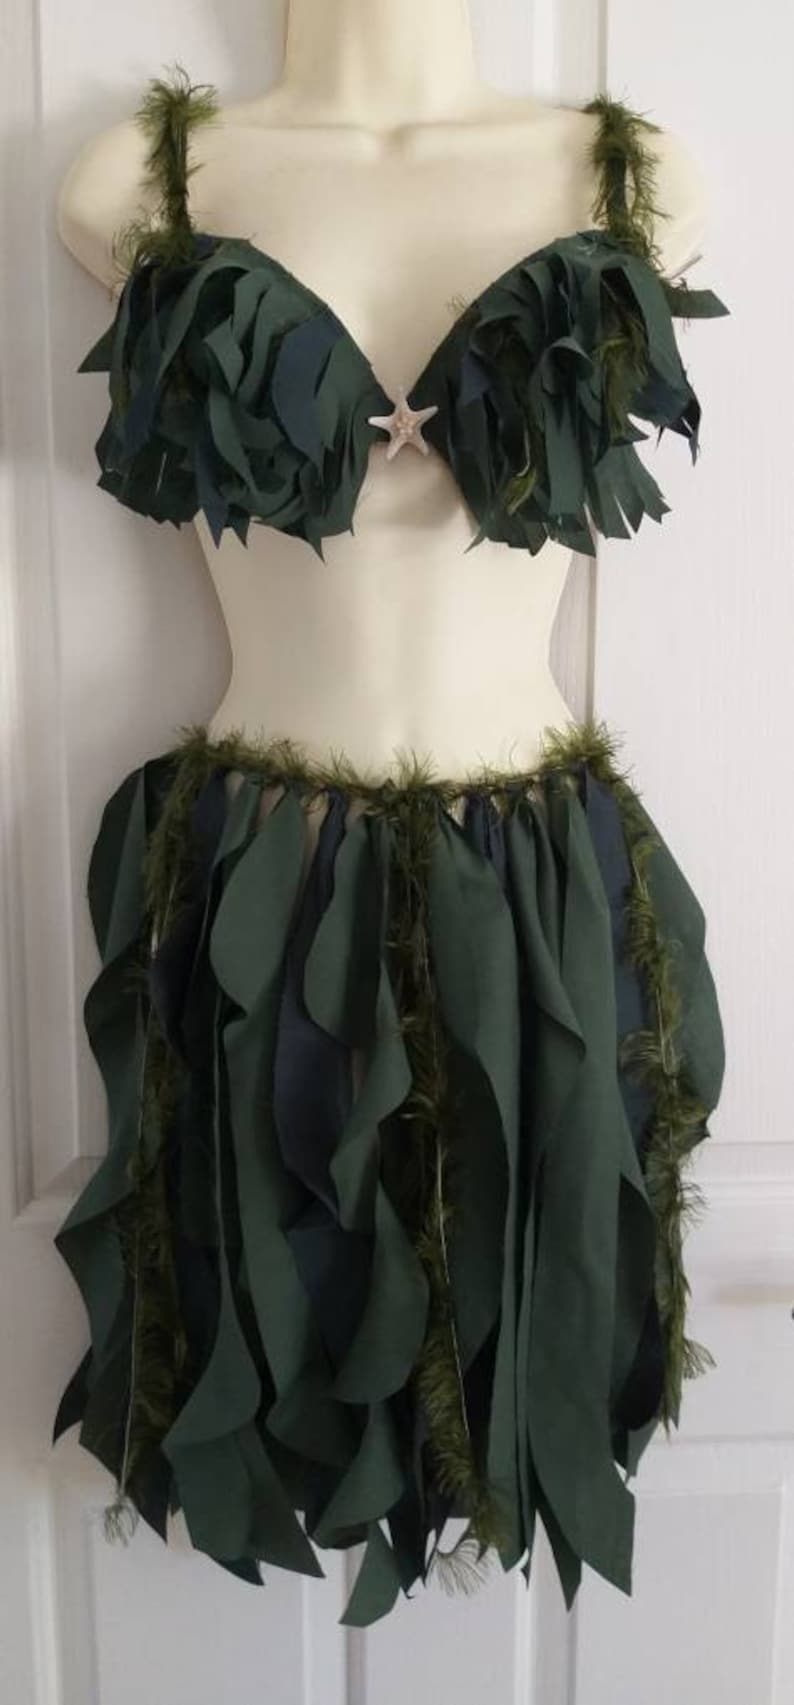 Mermaid Skirt, Made to Order Mermaid Seaweed Look Skirt, Mermaid Tail Alternative, Seaweed Skirt, Belly Dance, Mermaid Costume, seaweed image 9